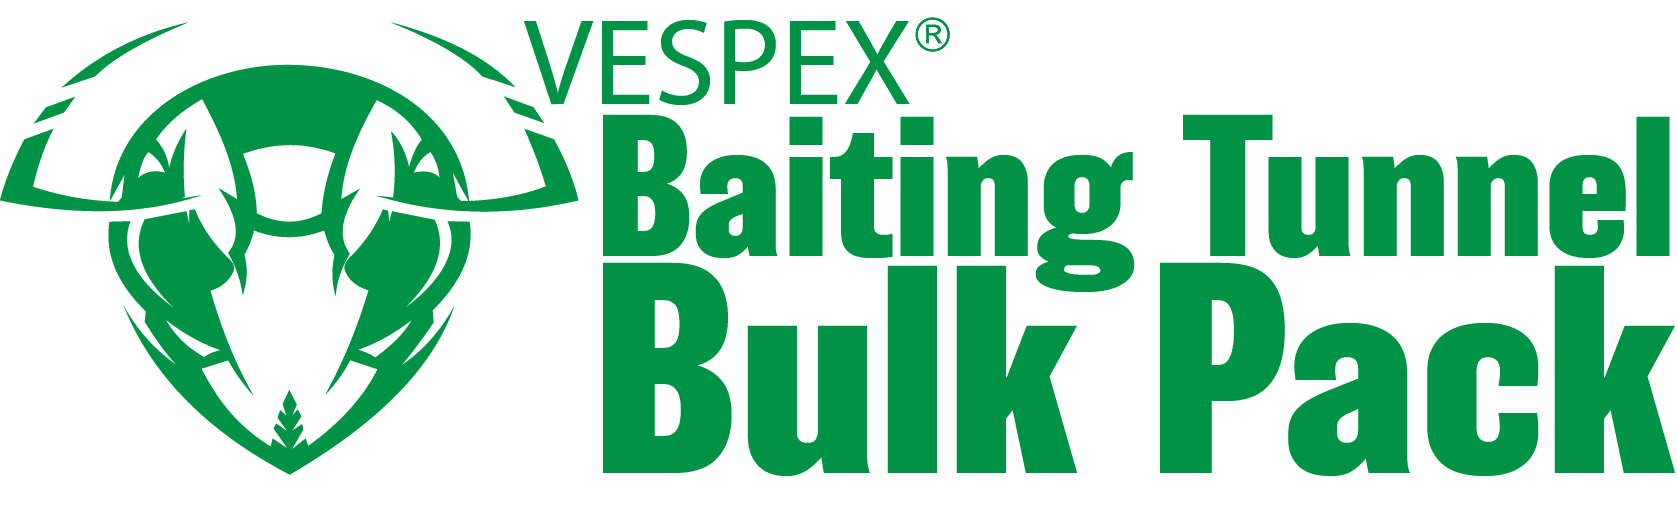 Sundew VESPEX Baiting Tunnel Bulk Pack logo